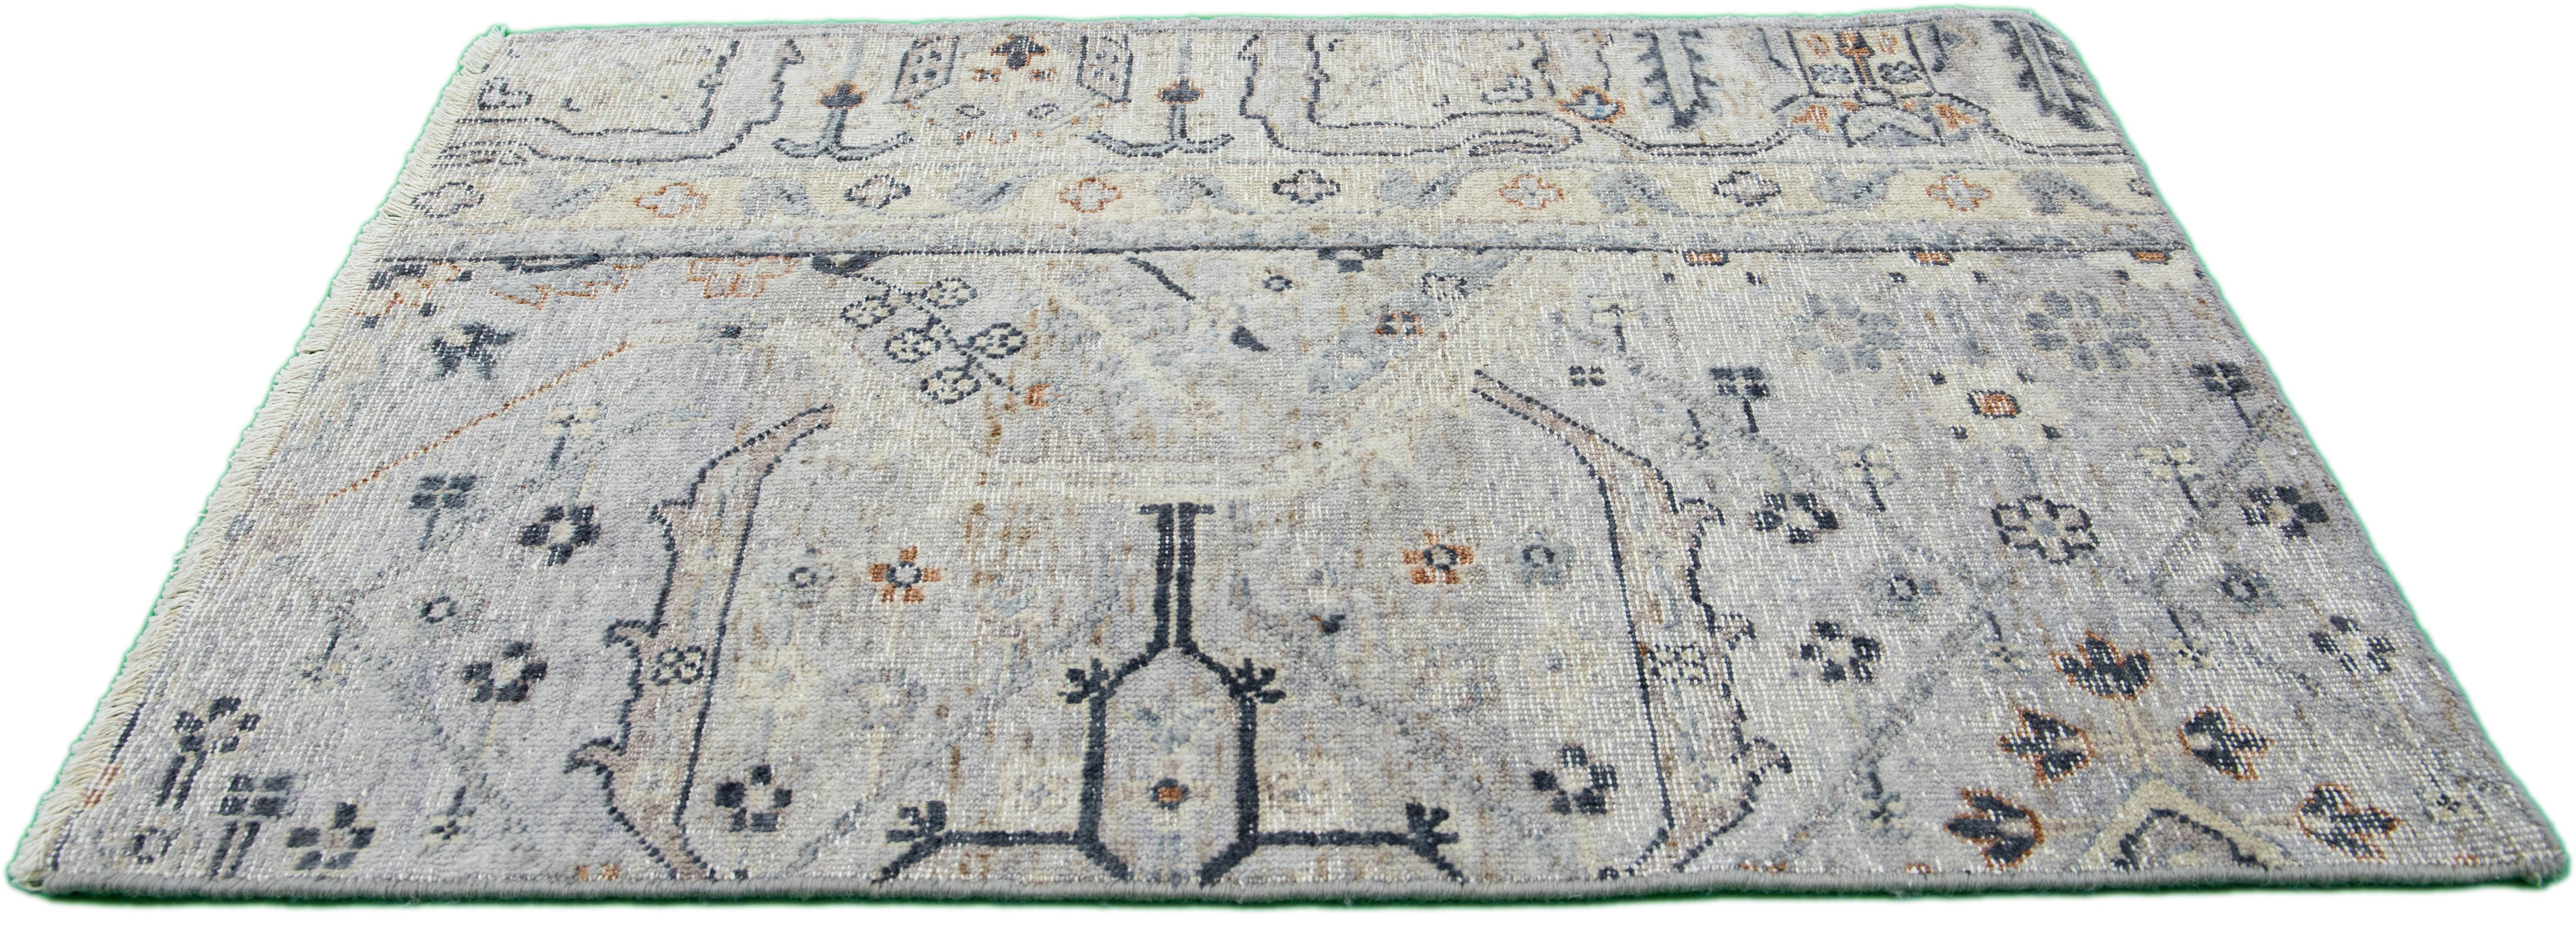 Die Artisan-Linie von Apadana ist eine elegante Möglichkeit, einem Raum eine auffallend antike Ästhetik zu verleihen. Diese Teppichserie ist ausgesprochen einzigartig und zeigt, wie ein antiker Teppich aussehen kann. Jedes einzelne Stück unserer